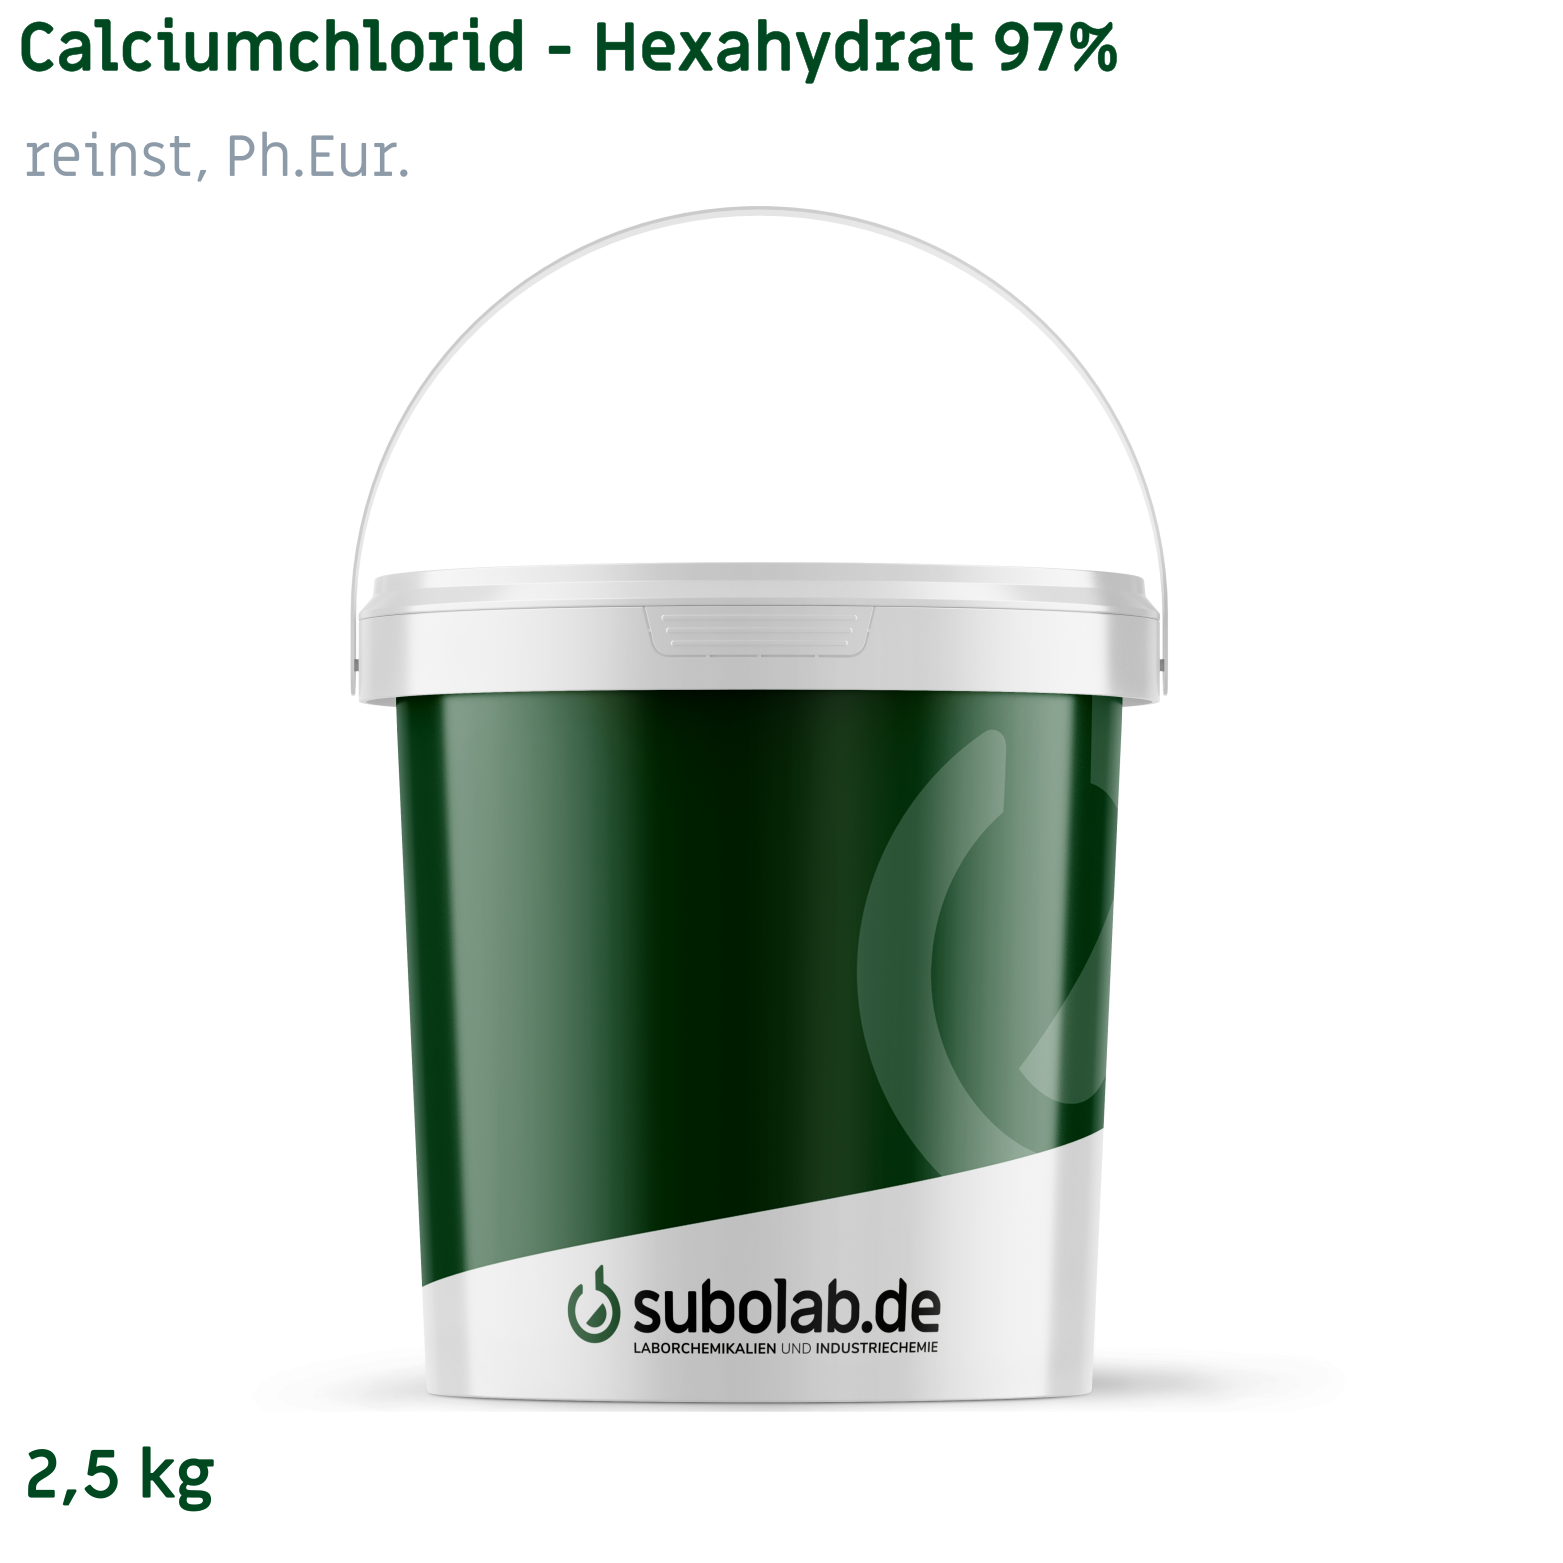 Bild von Calciumchlorid - Hexahydrat 97% reinst, Ph.Eur. (2,5 kg)